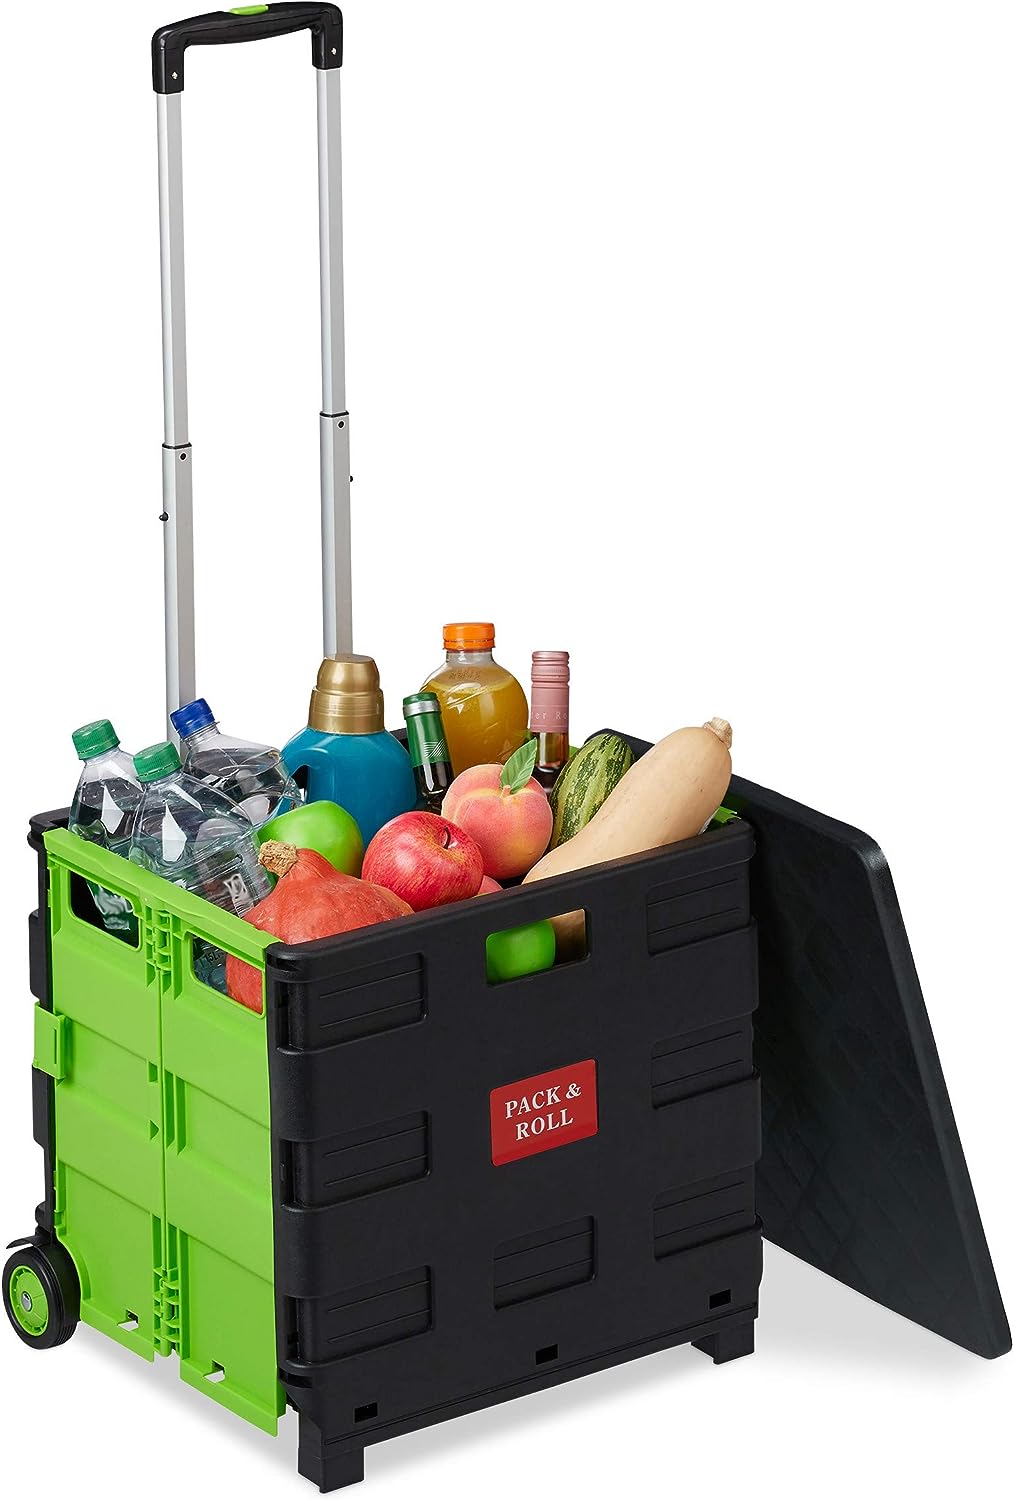 Relaxdays Einkaufstrolley klappbar, bis 35 kg, 50 l Kiste, mit Teleskopgriff, 2 Rollen, Transport Trolley, grün/schwarz, 1 Stück